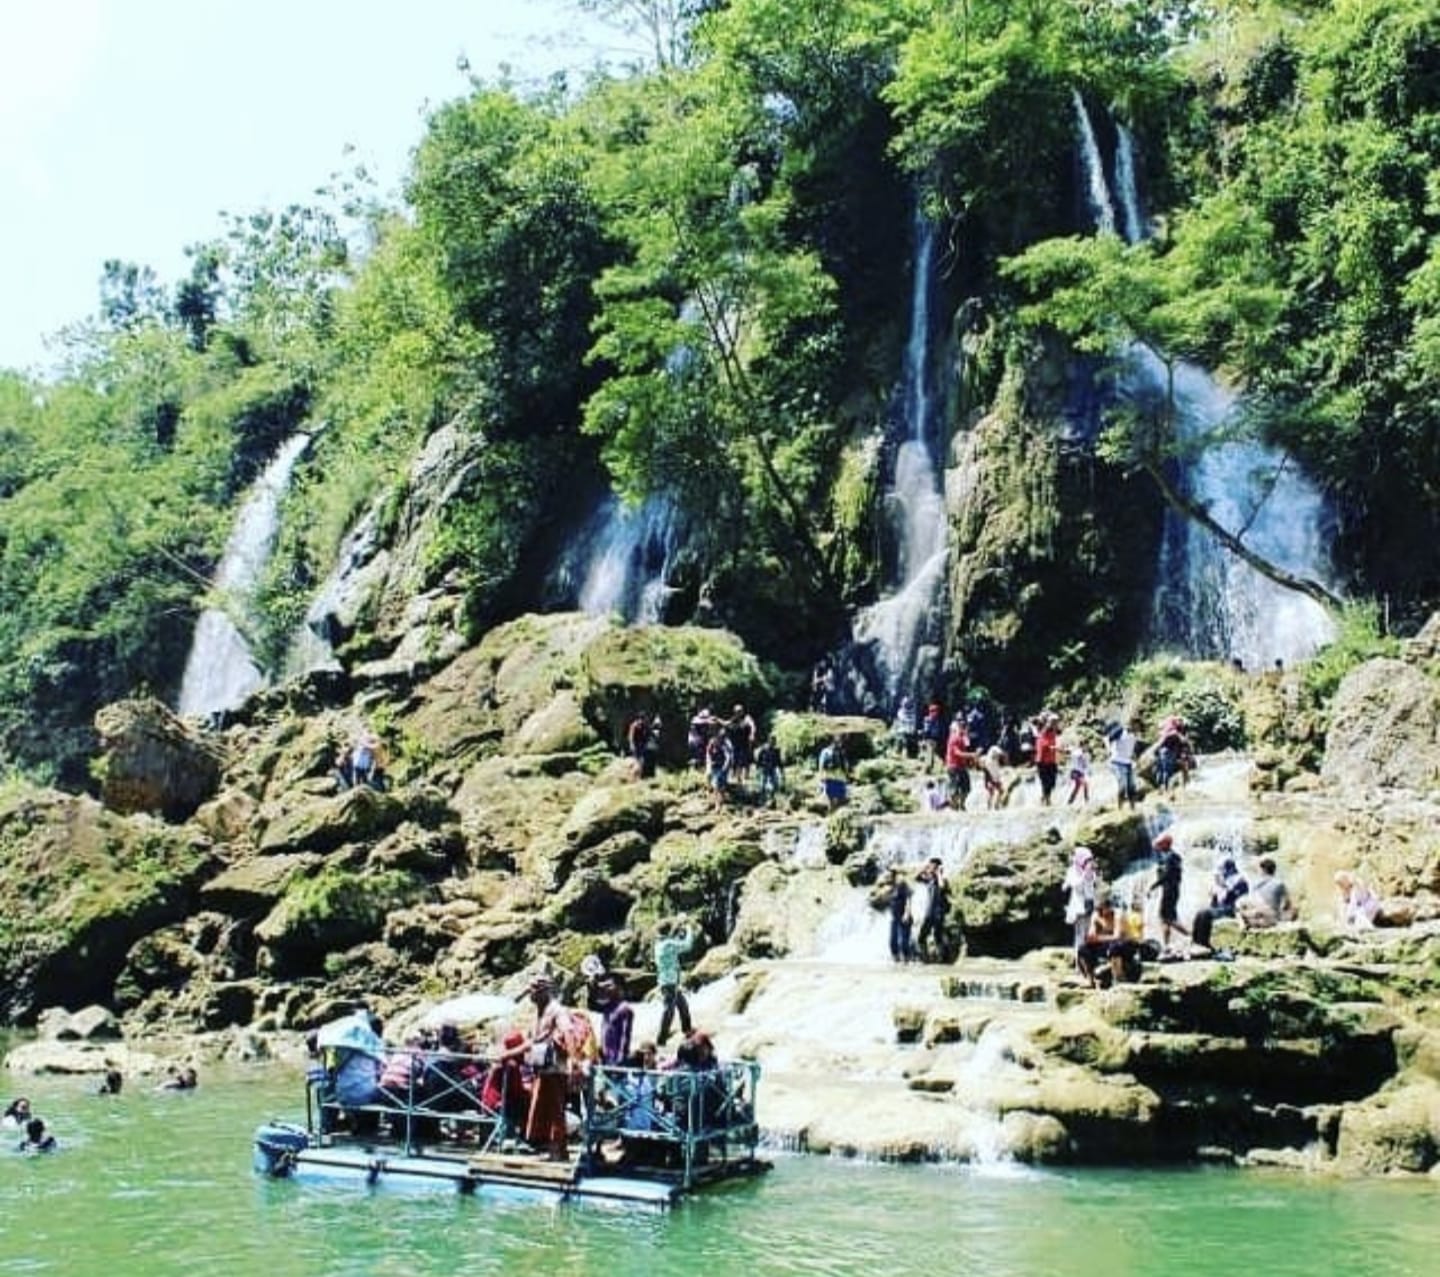 Tempat Tersembunyi di Jogja yang Wajib Kamu Kunjungi! Pengalaman Seru Susuri Sungai dengan Keindahan Air Terjun Sri Gethuk yang Instagramable!